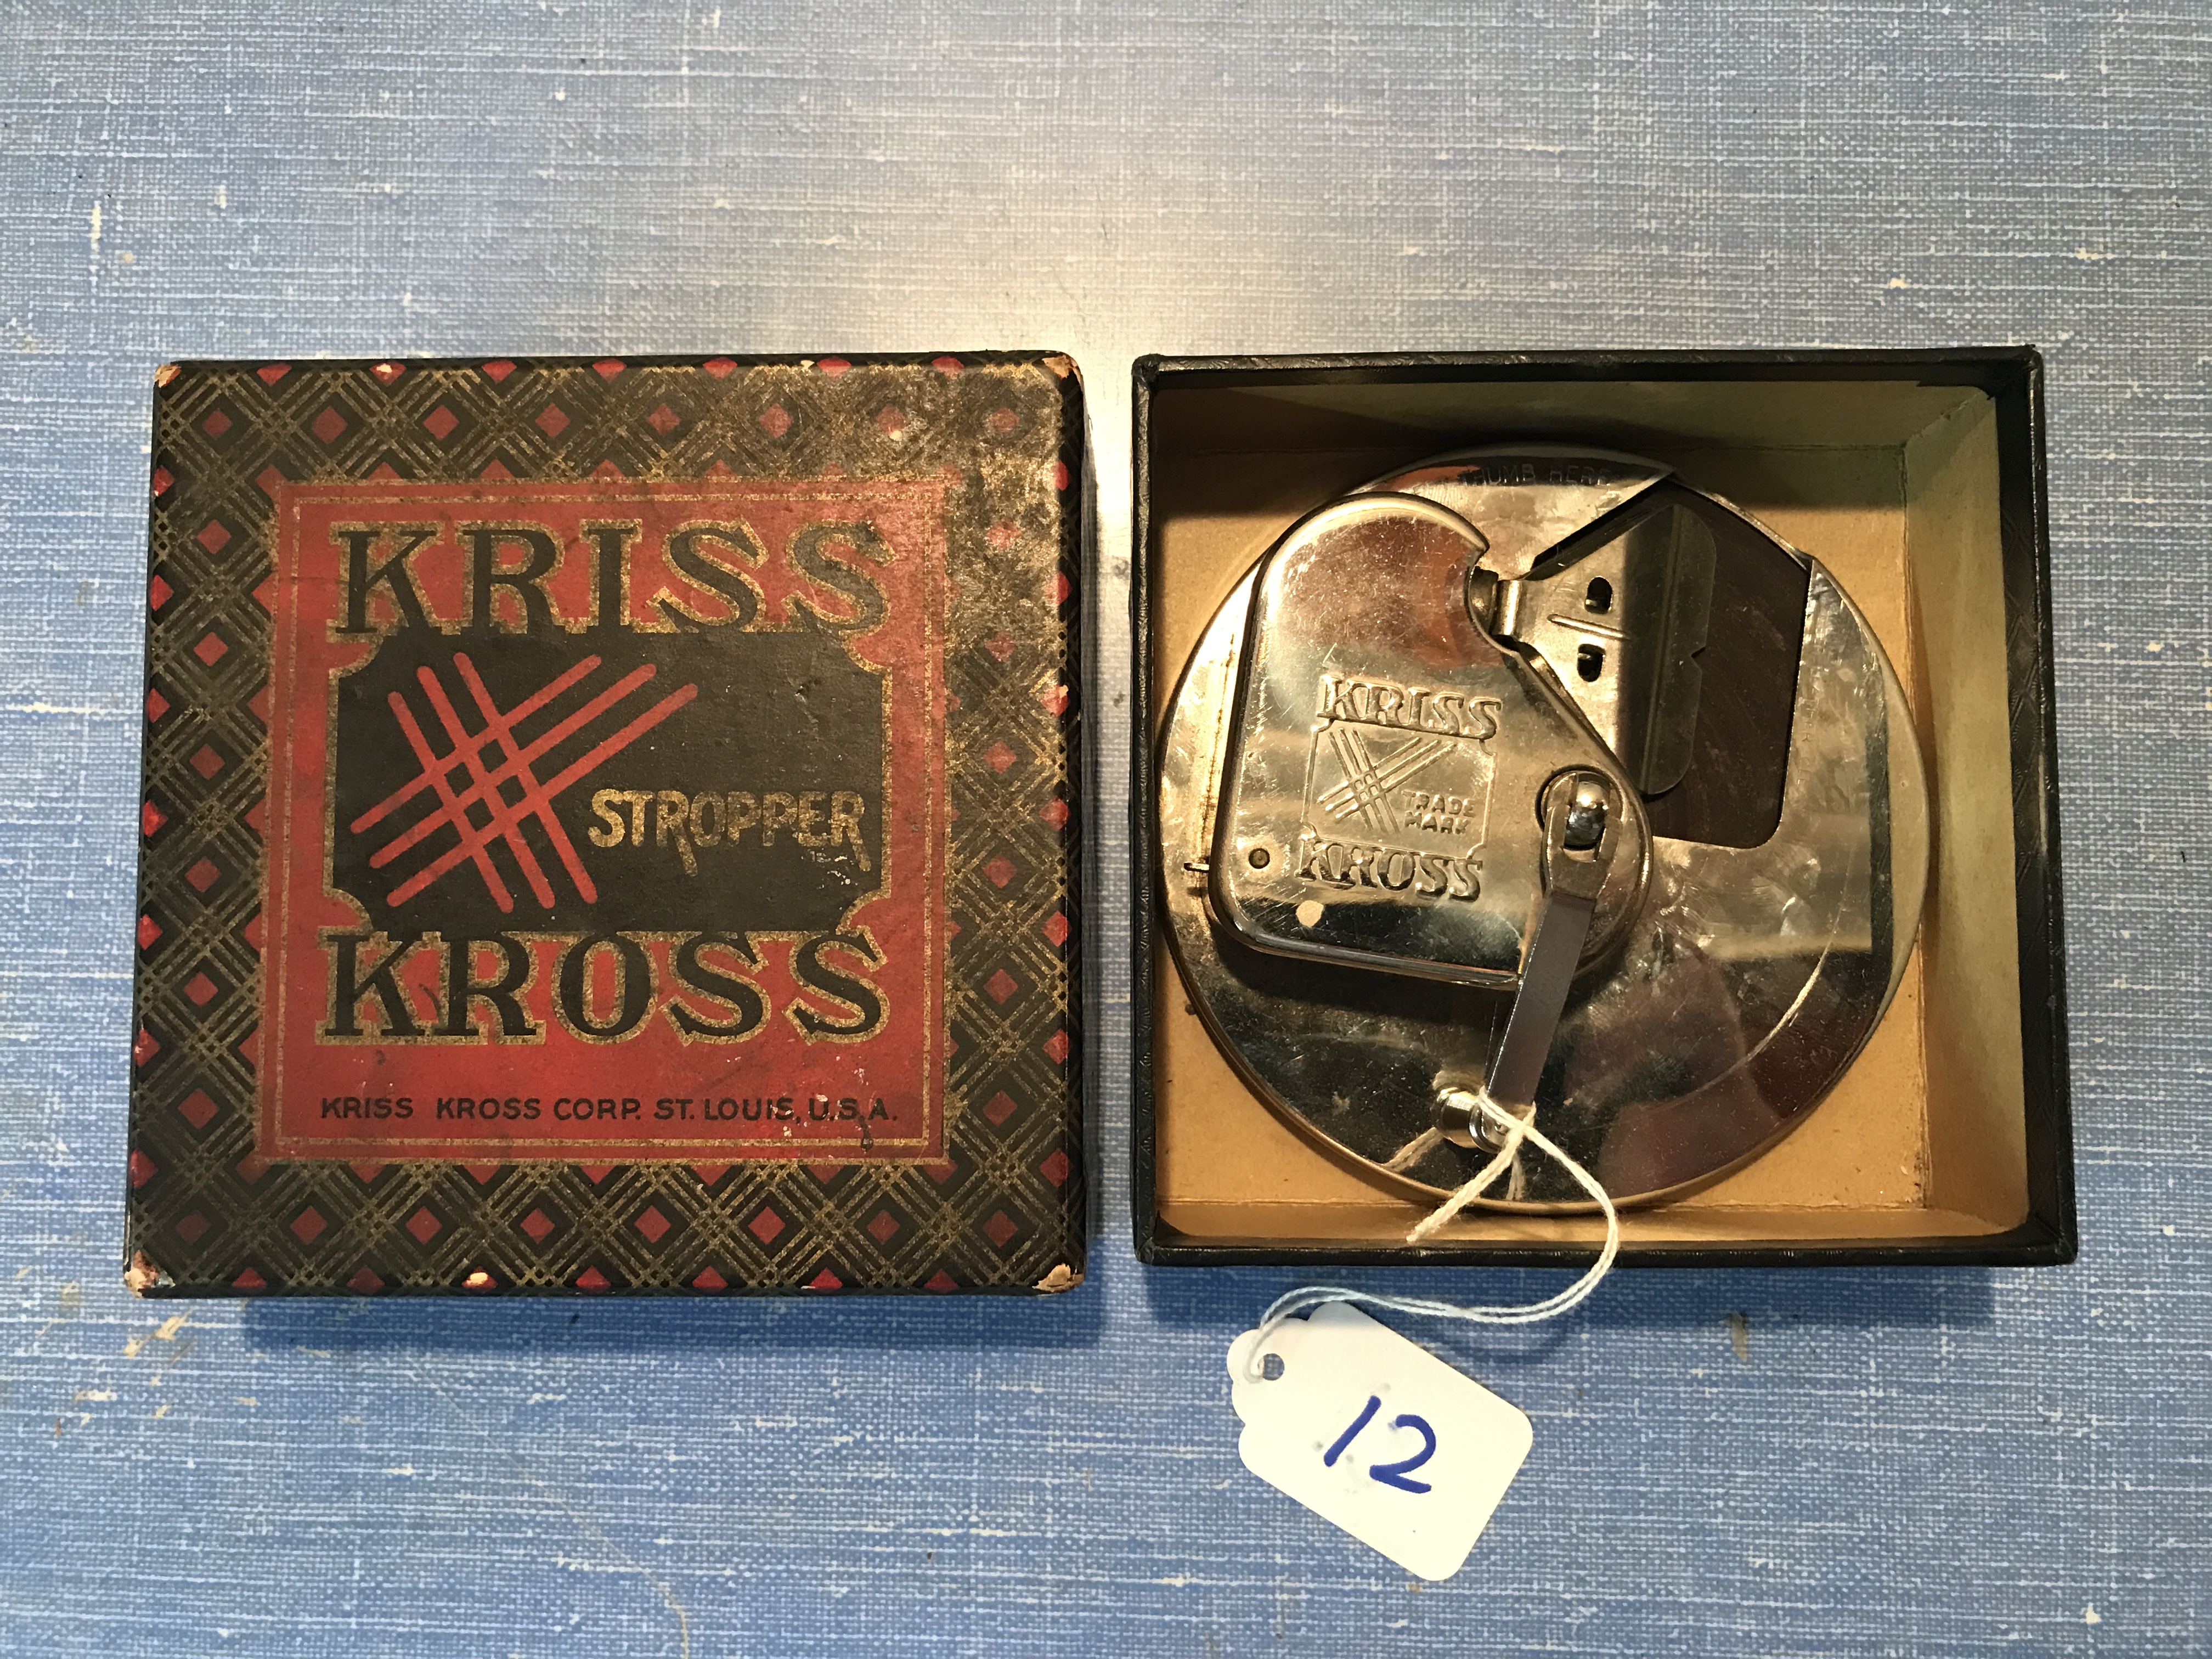 Vintage Kriss Kross Stropper Razor Blade Sharpener with original